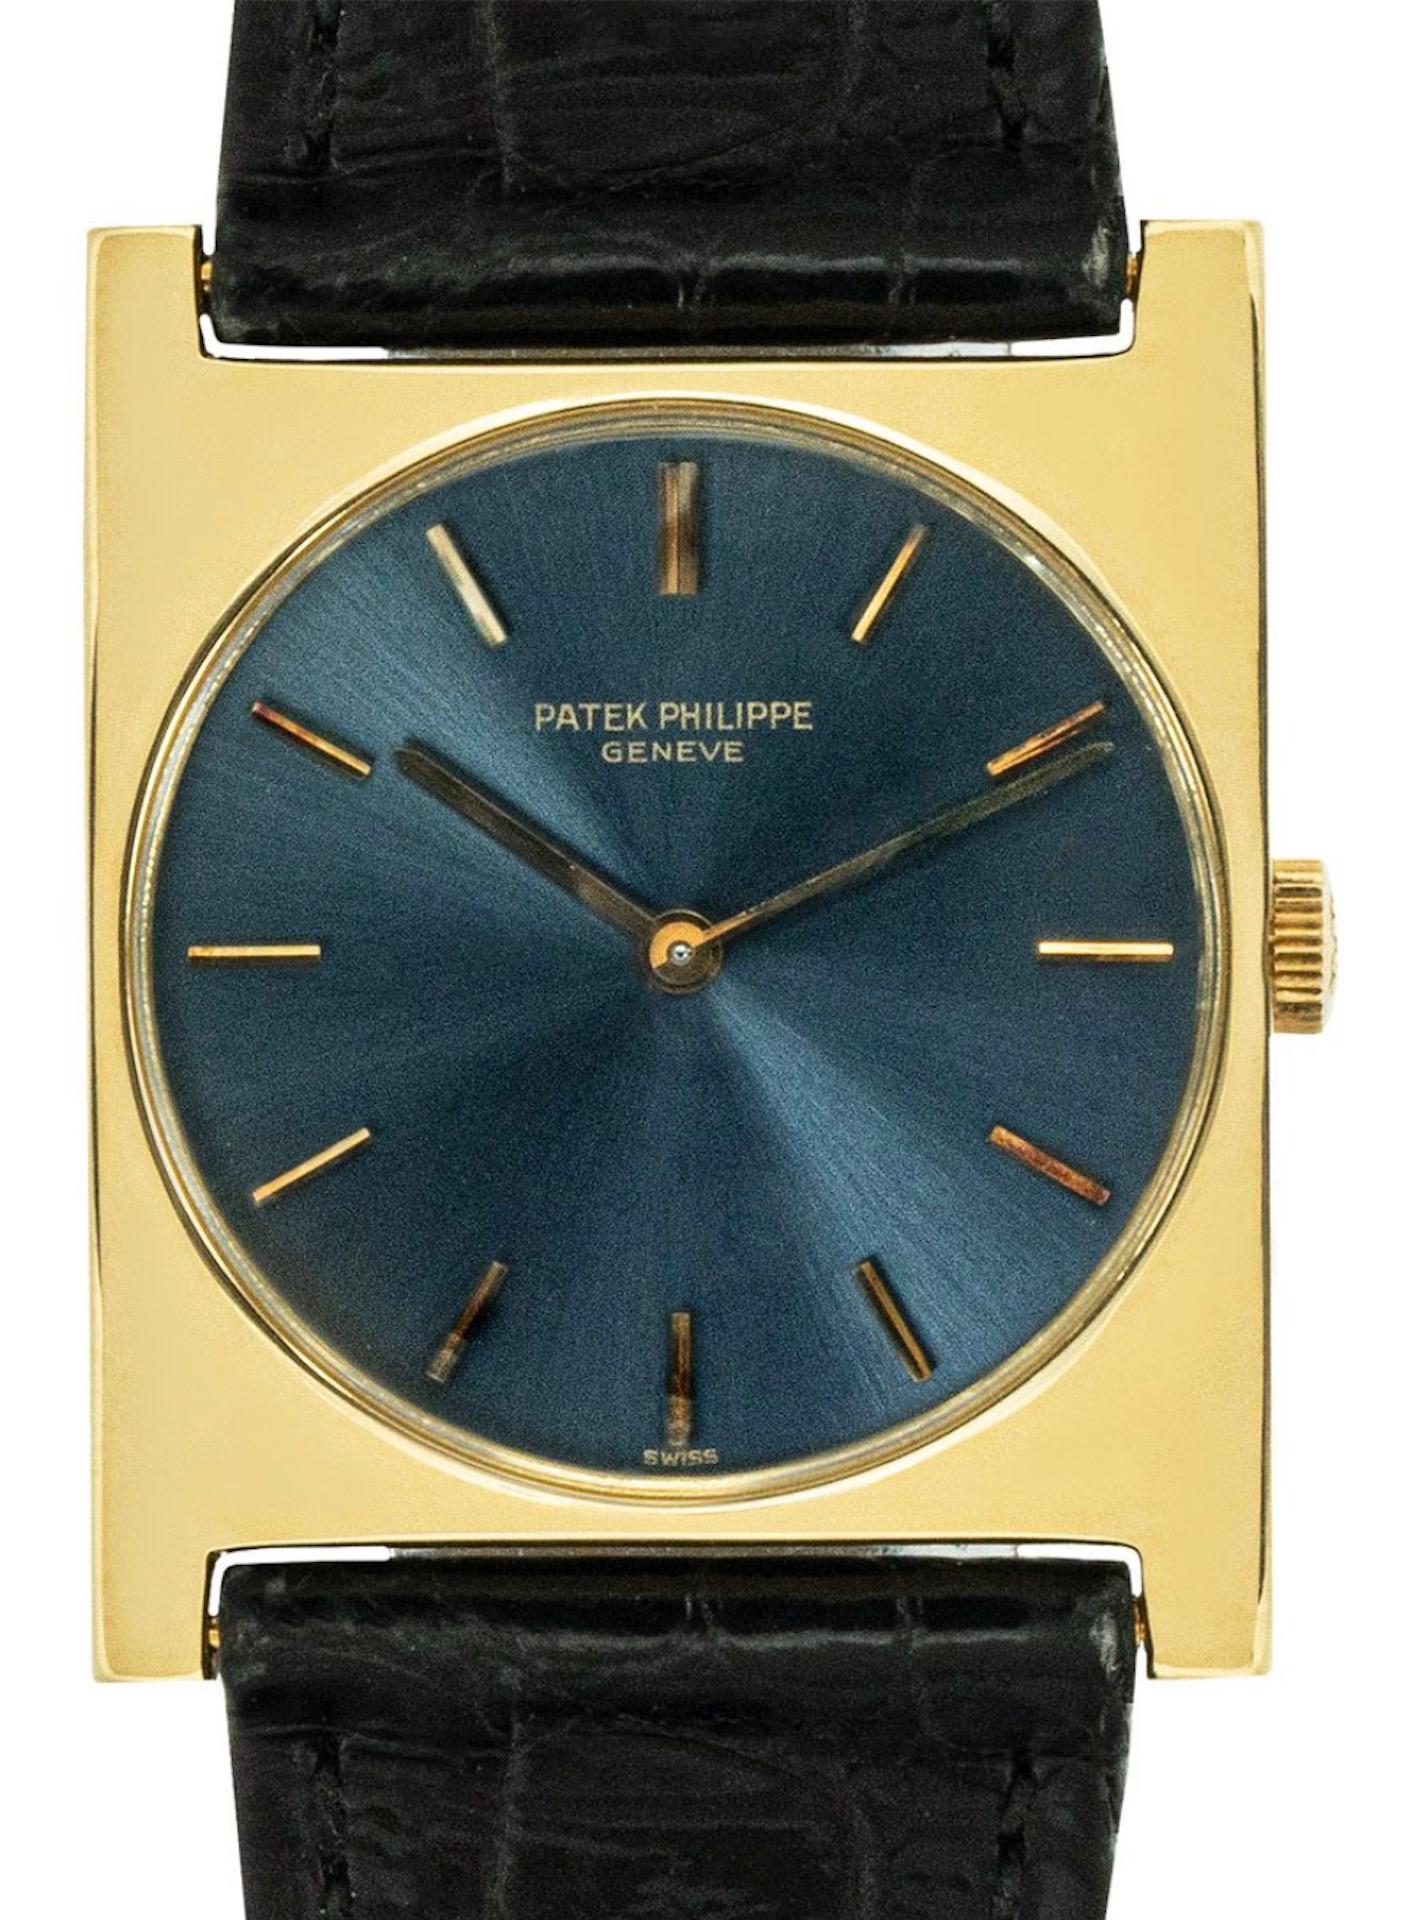 Une montre habillée en or jaune de 28 mm par Patek Philippe. Cette montre se distingue par son cadran bleu, ses index appliqués et sa lunette en or jaune. Dotée d'un verre saphir, d'un mouvement à remontage manuel et d'un bracelet original en cuir